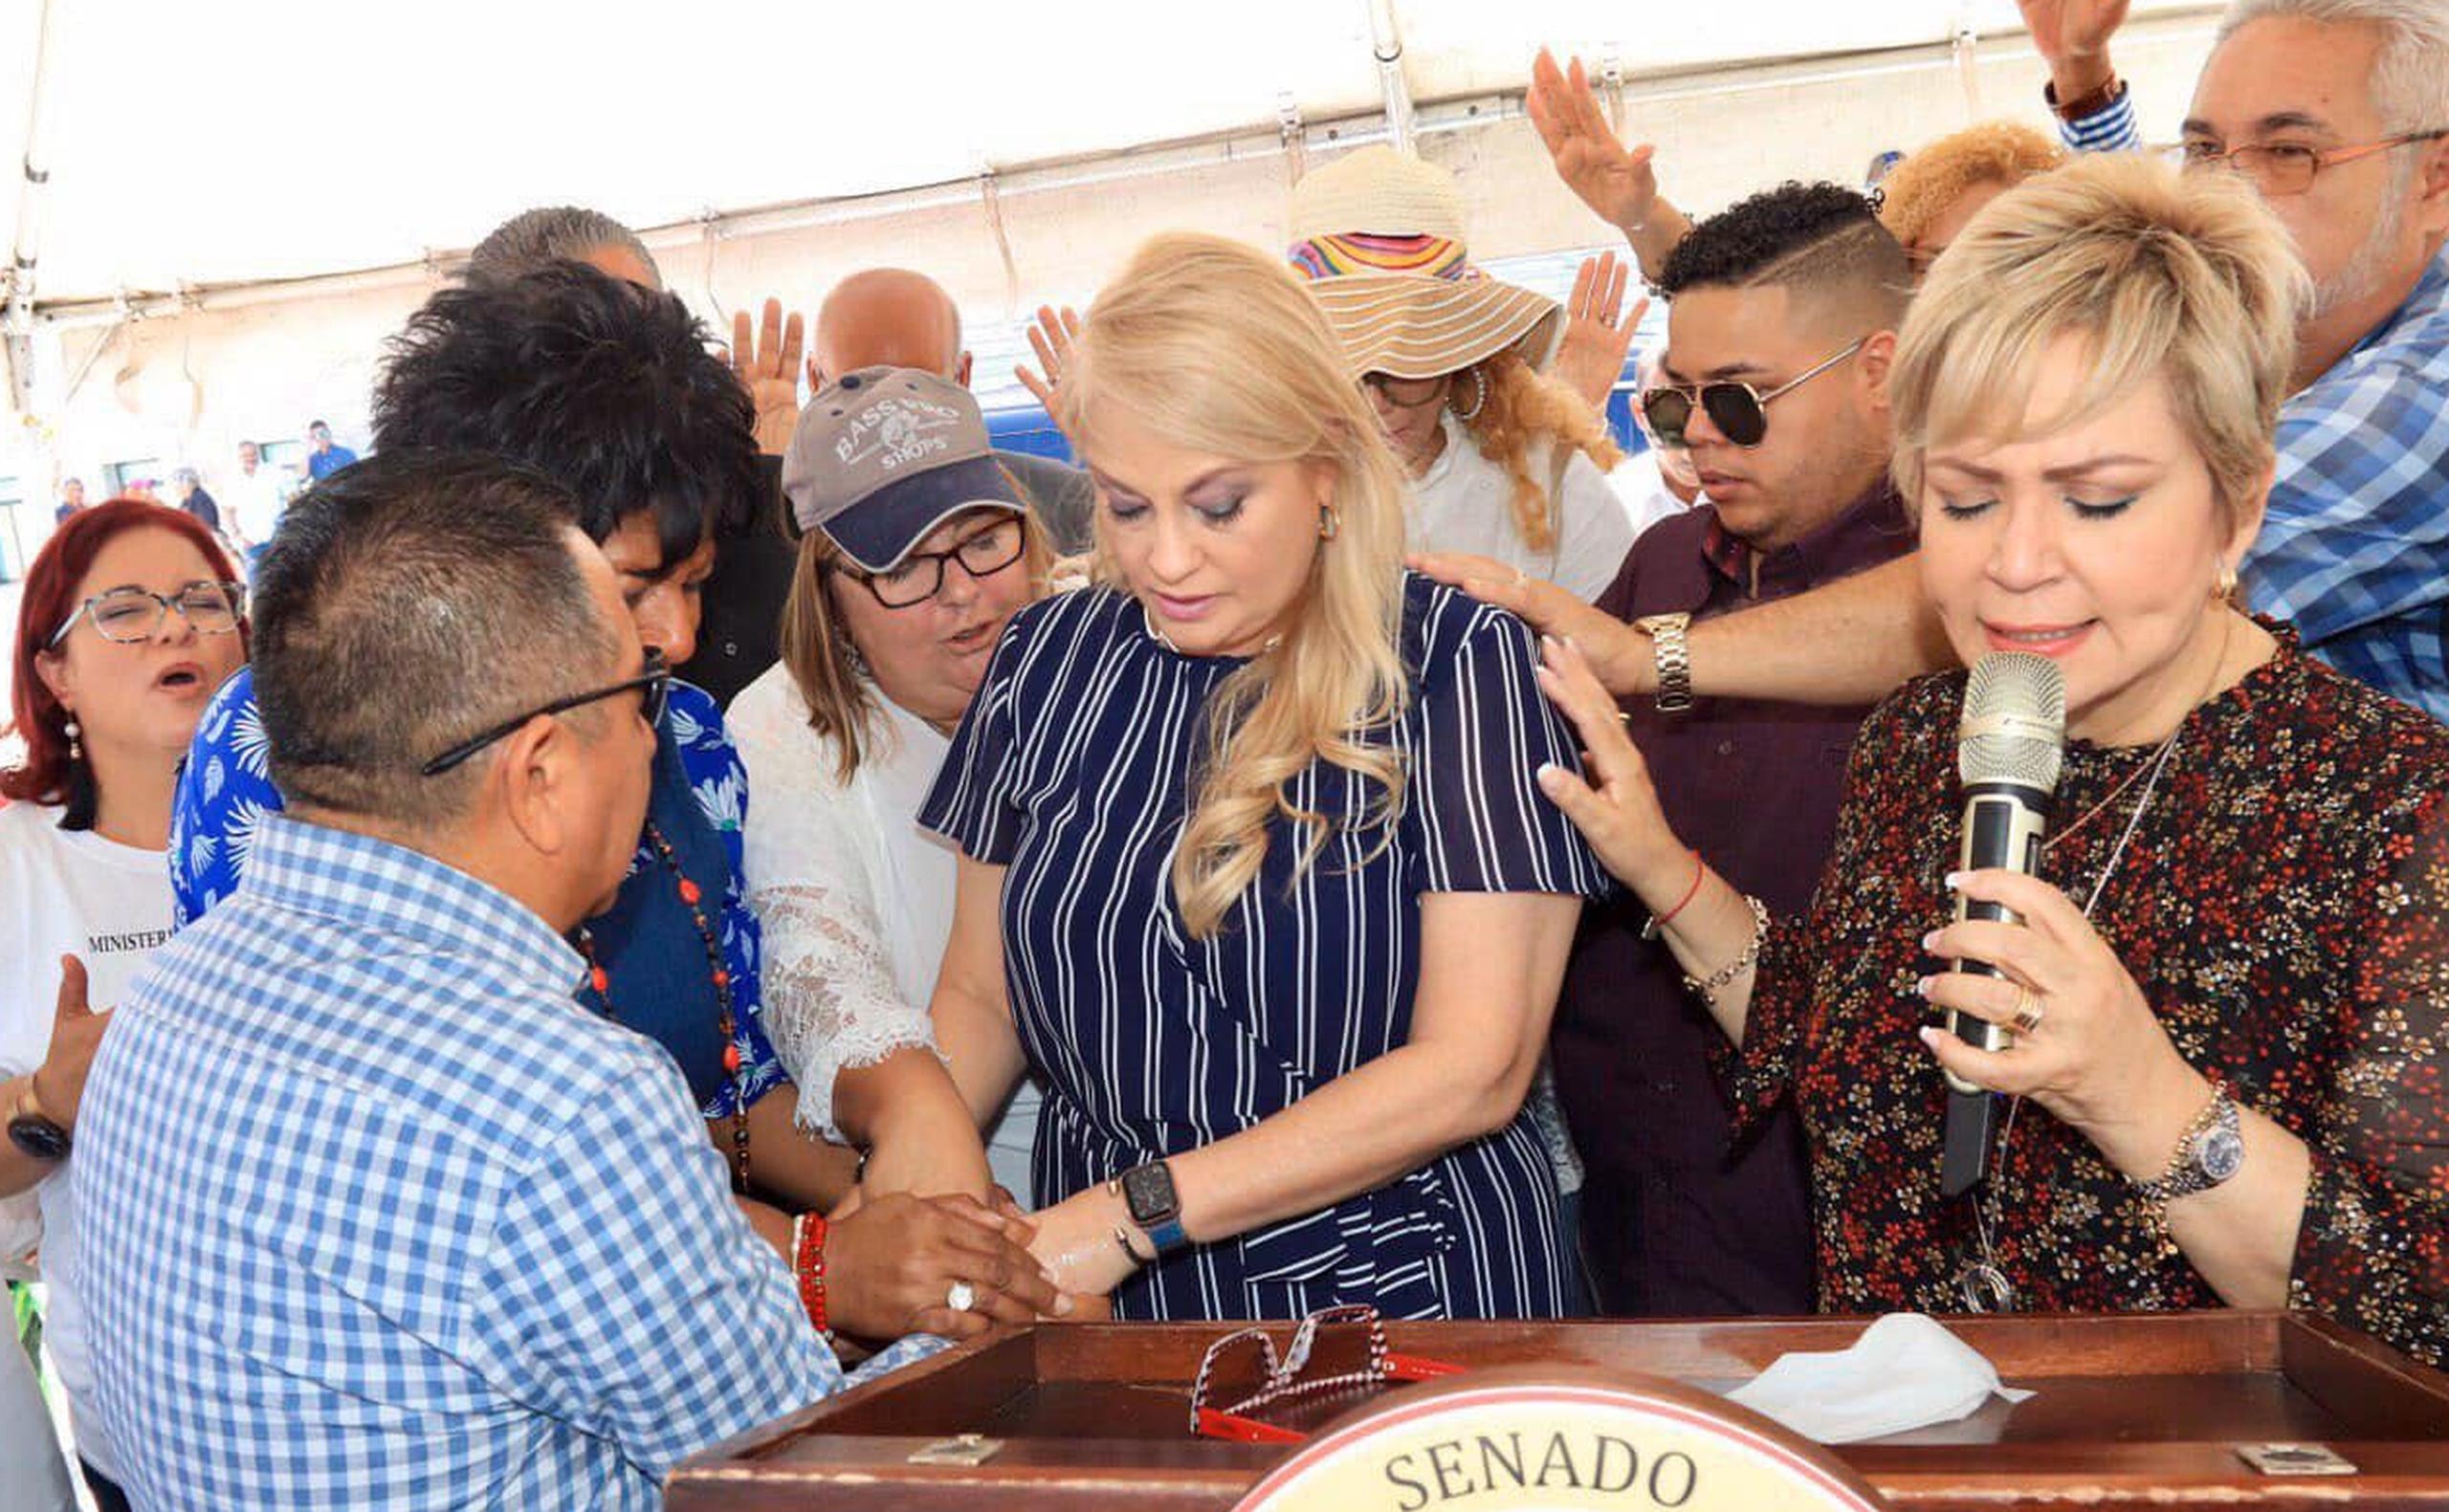 La pastora Wanda Rolón ora por la gobernadora Wanda Vázquez. (Captura / Facebook)